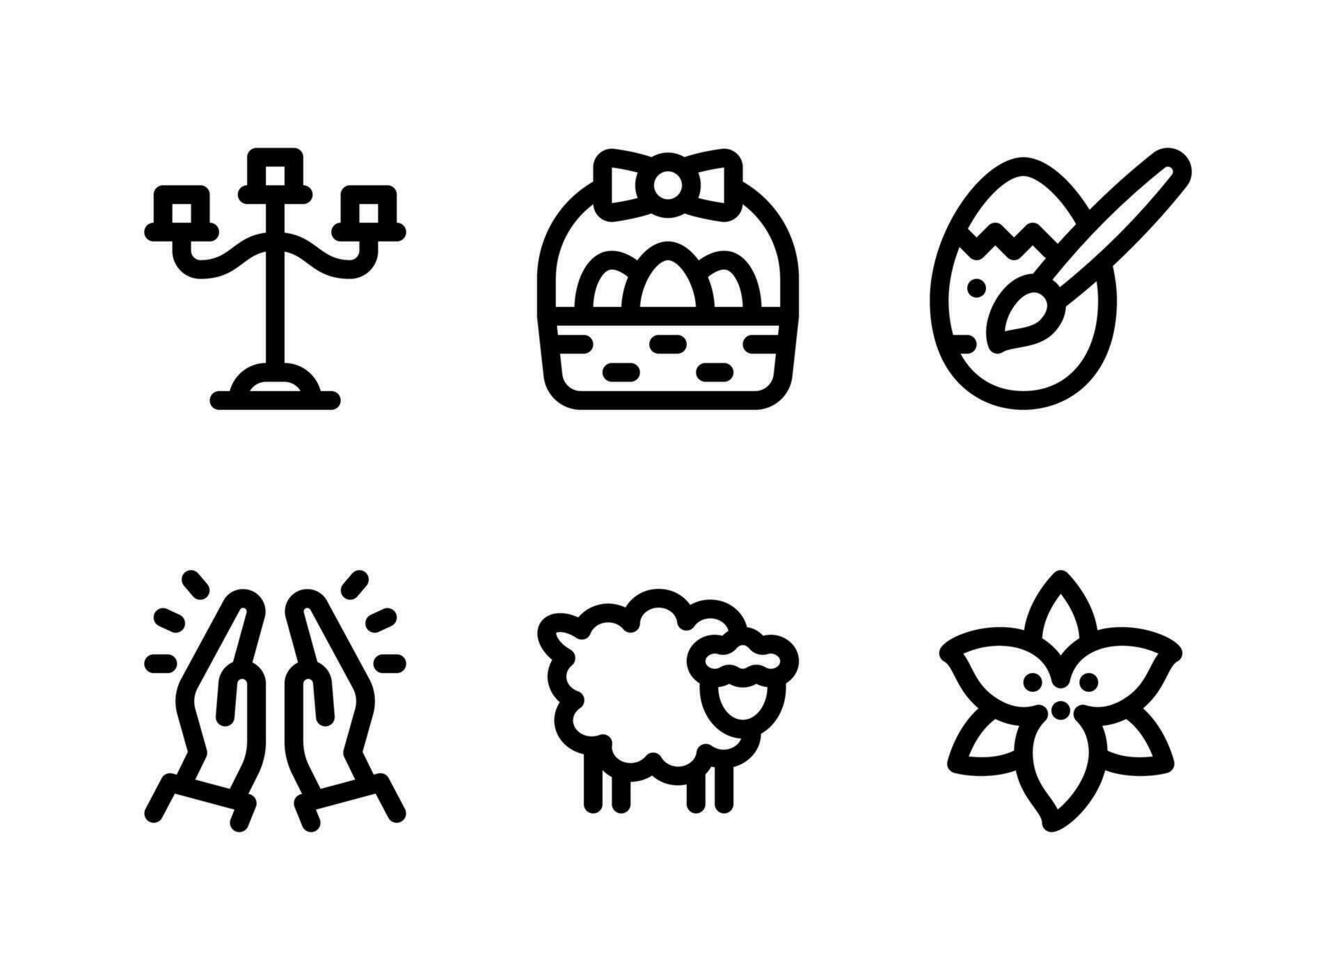 conjunto simples de ícones sólidos de vetor relacionados à Páscoa. contém ícones como candelabros, cesta de páscoa, ovo pintado, orando e muito mais.